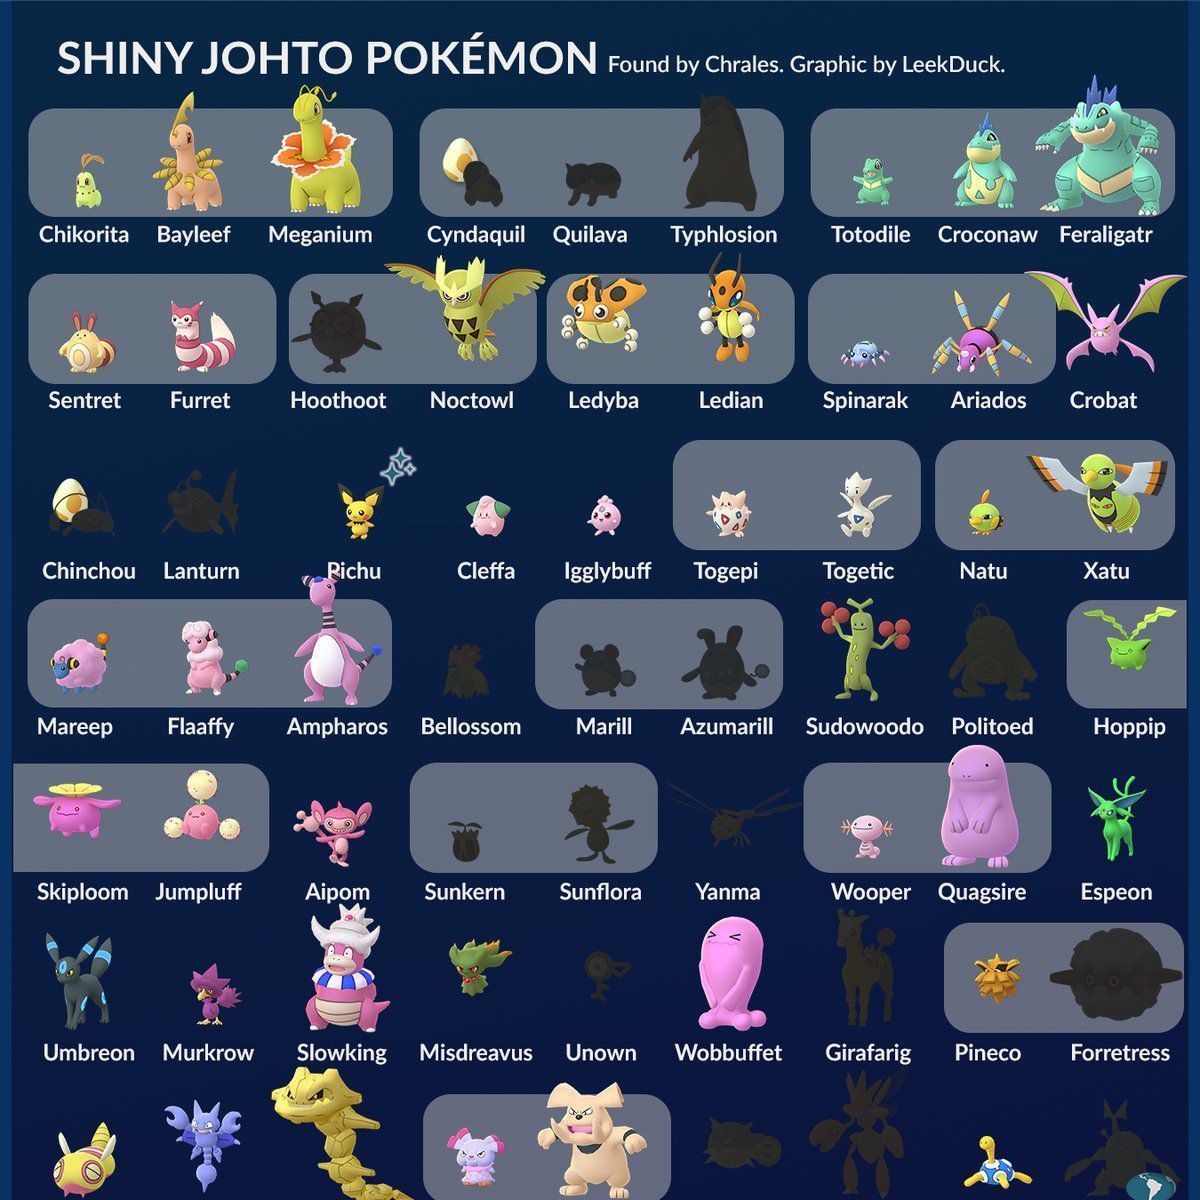 Nuevos Pokémon variocolor descubiertos en Pokémon GO gracias a 'dataminers'